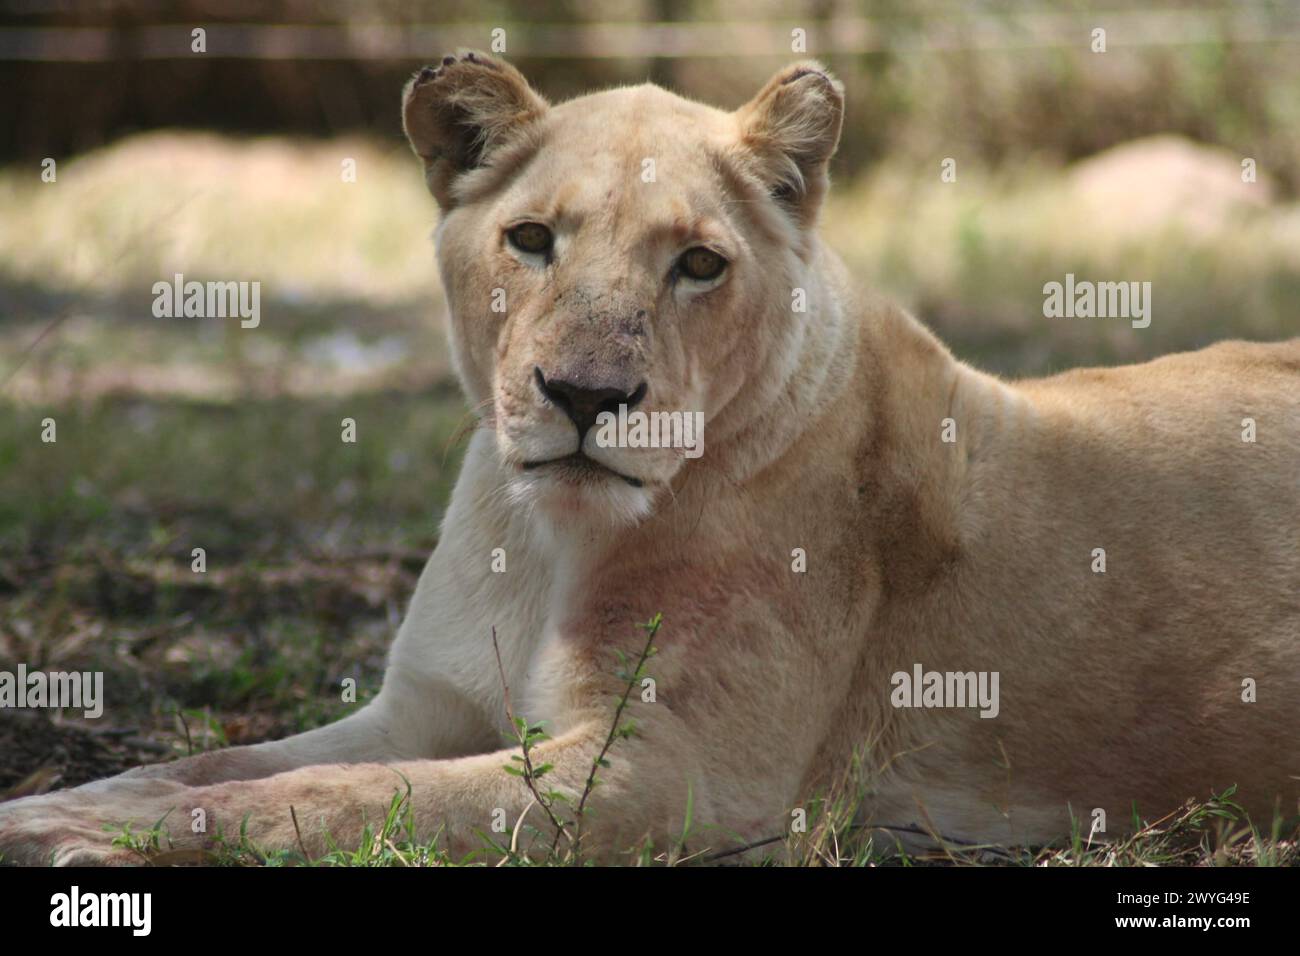 Un lion se détendant à l'ombre, établissant un contact visuel avec la caméra Banque D'Images